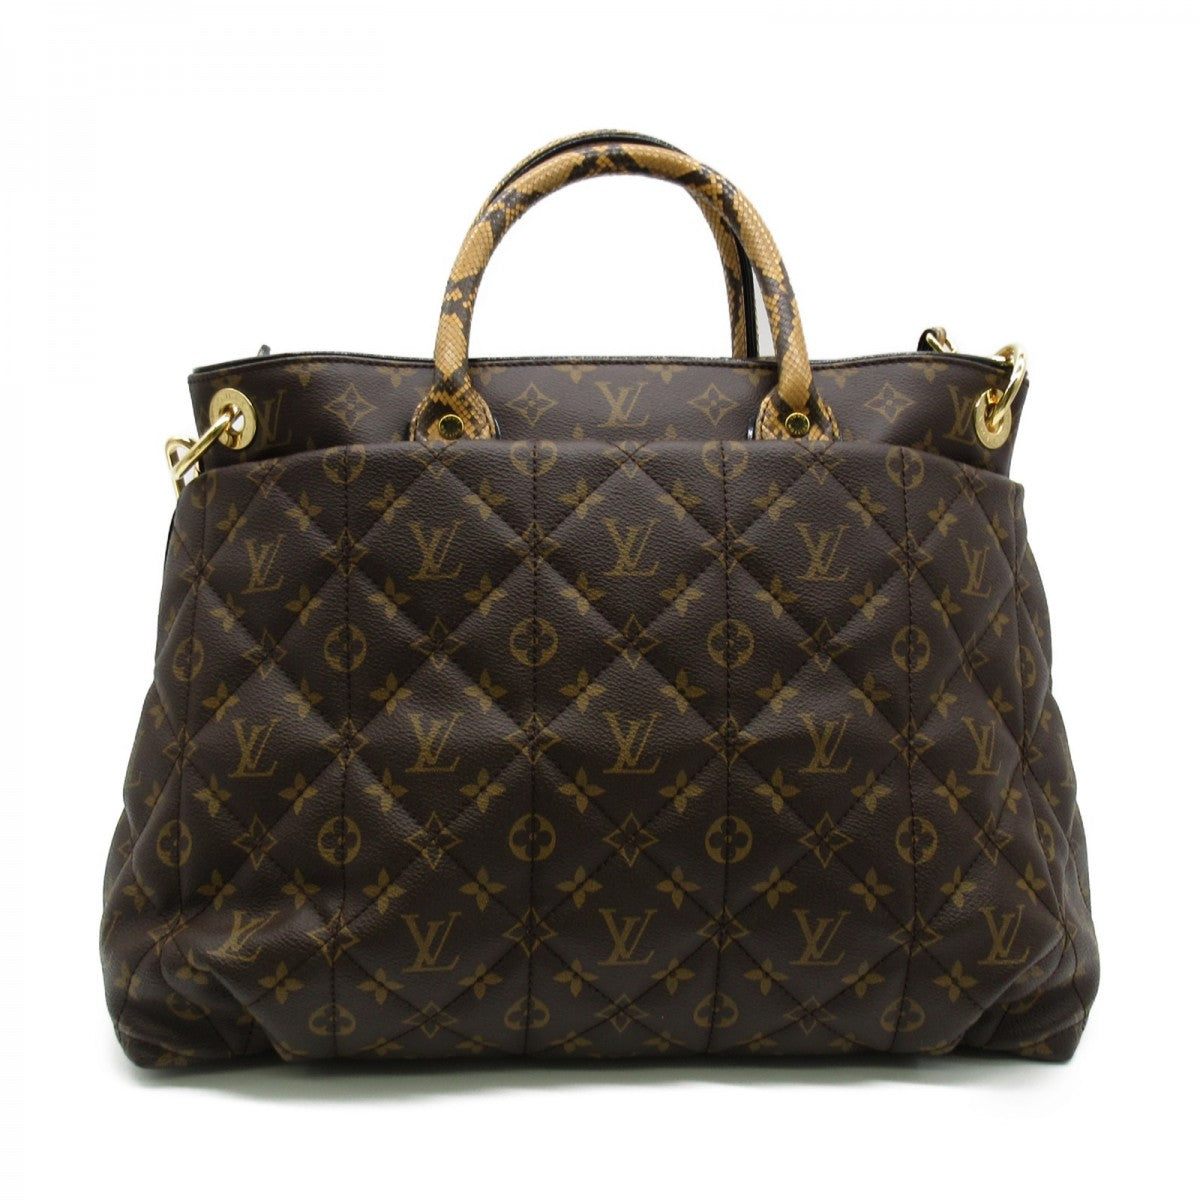 Louis Vuitton Monogram Etoile GM Canvas Handbag M40402 in Excellent condition